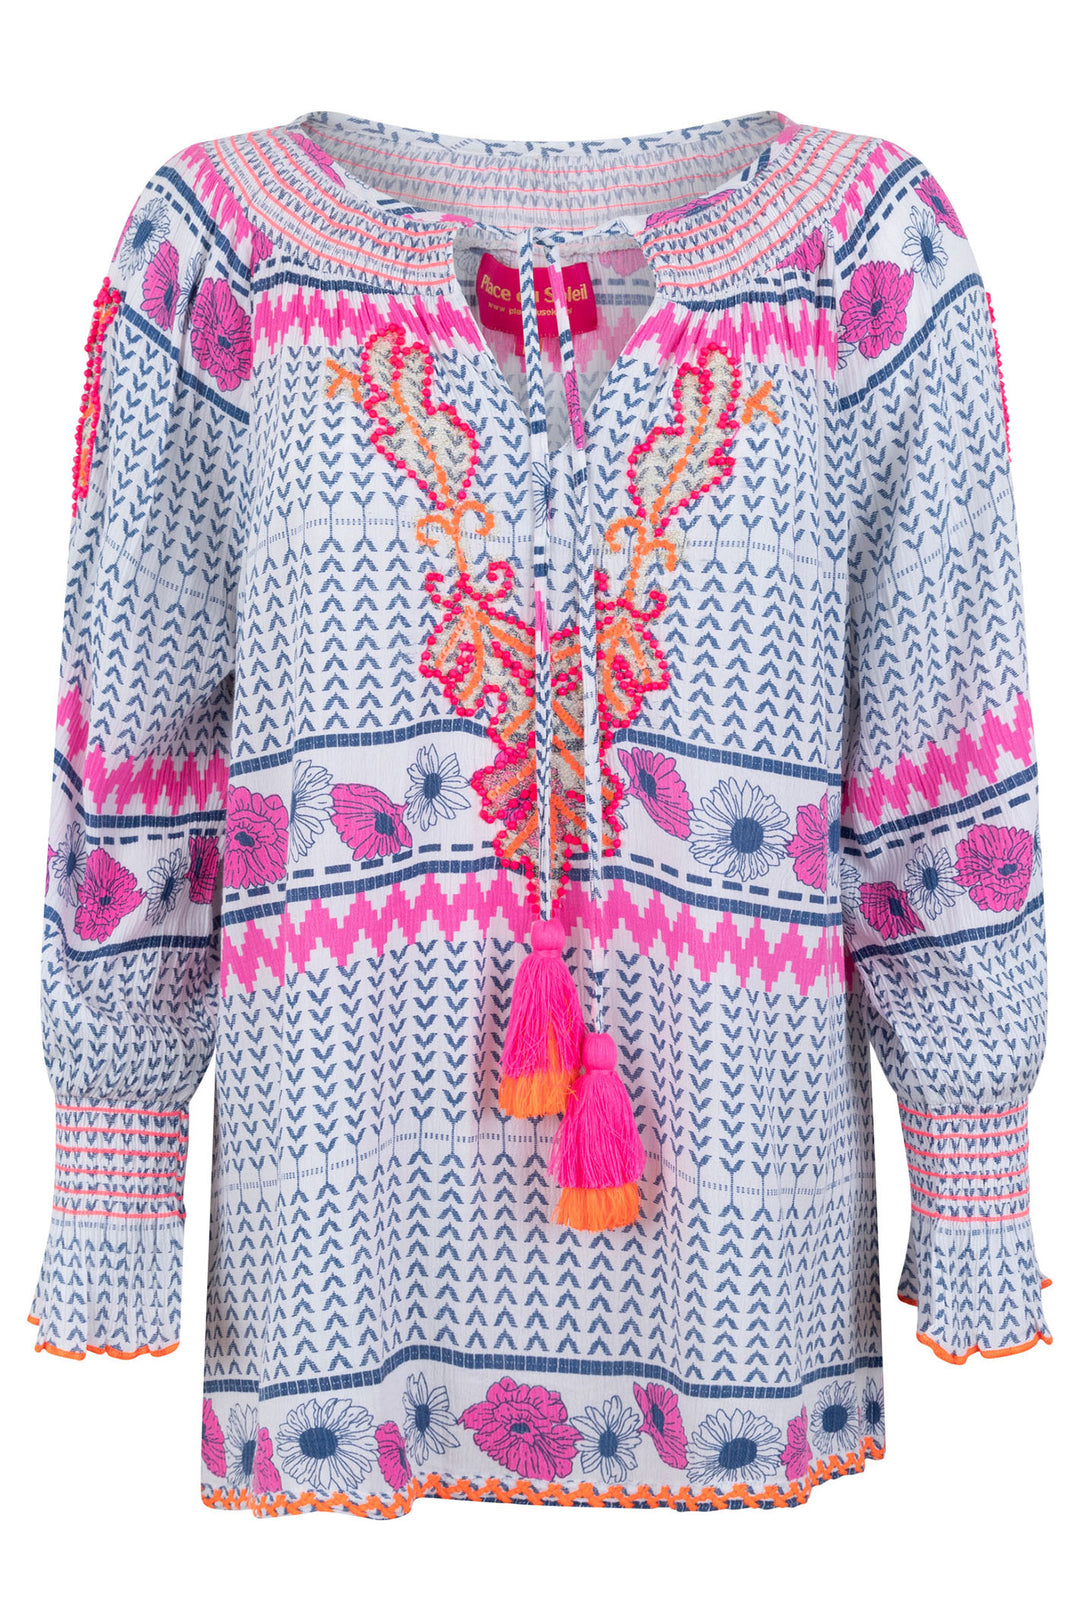 Place du Soleil S24 126 Blue Pink Print Tassle Tie Blouse - Olivia Grace Fashion